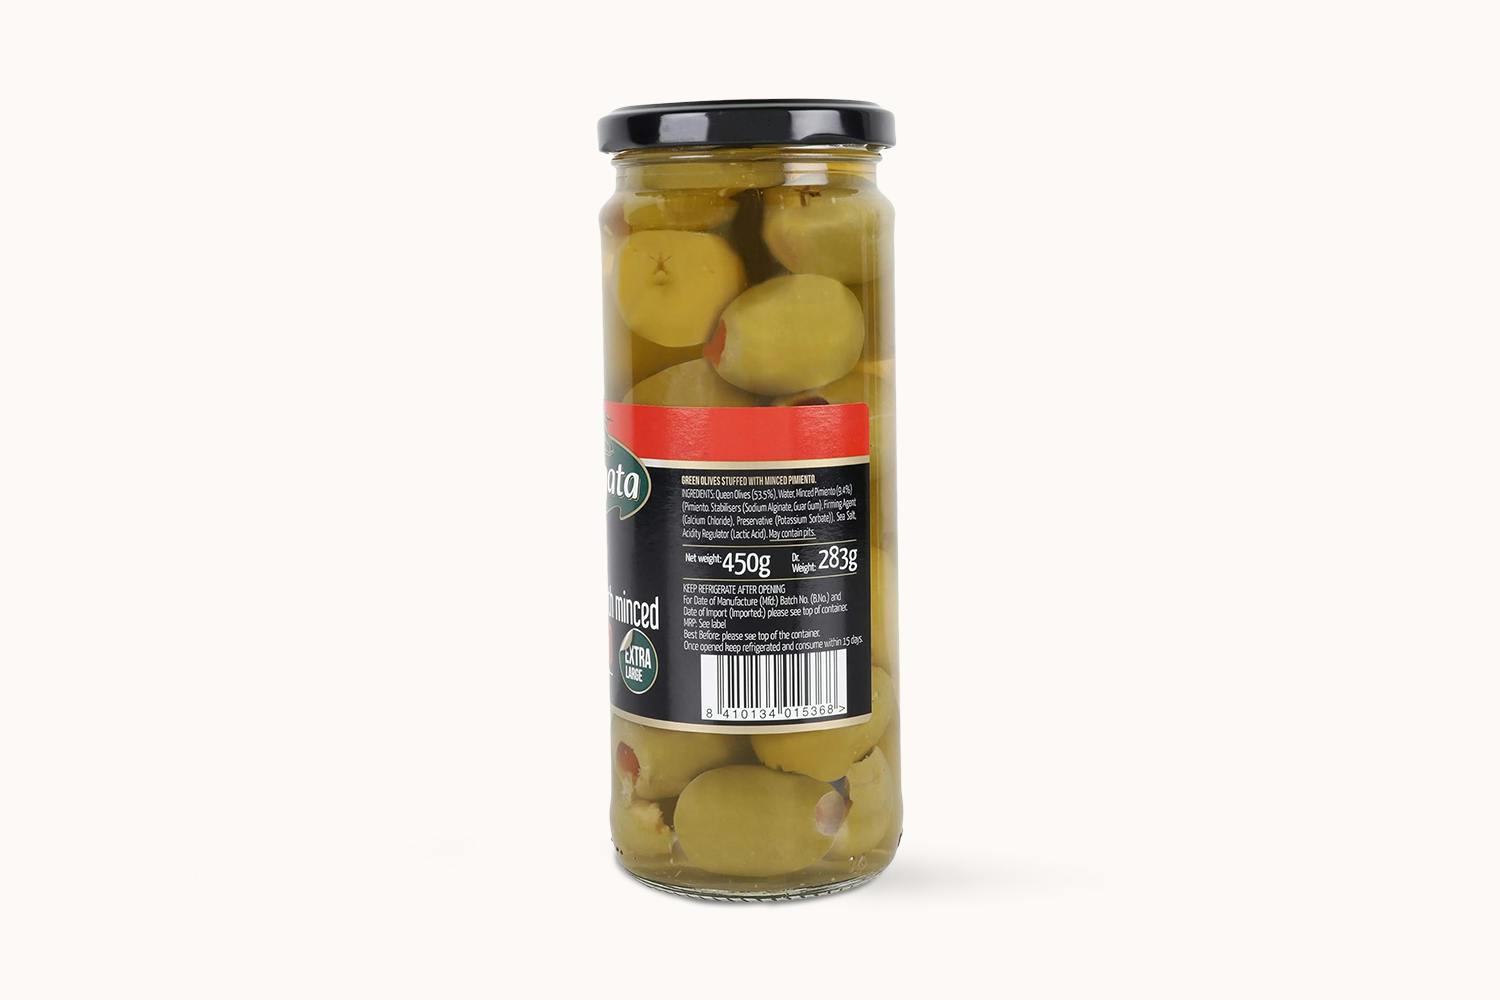 /f/r/fragata-pimiento-stuffed-green-queen-olive-450g-2_bkb0ulb9hskx4enl.jpg